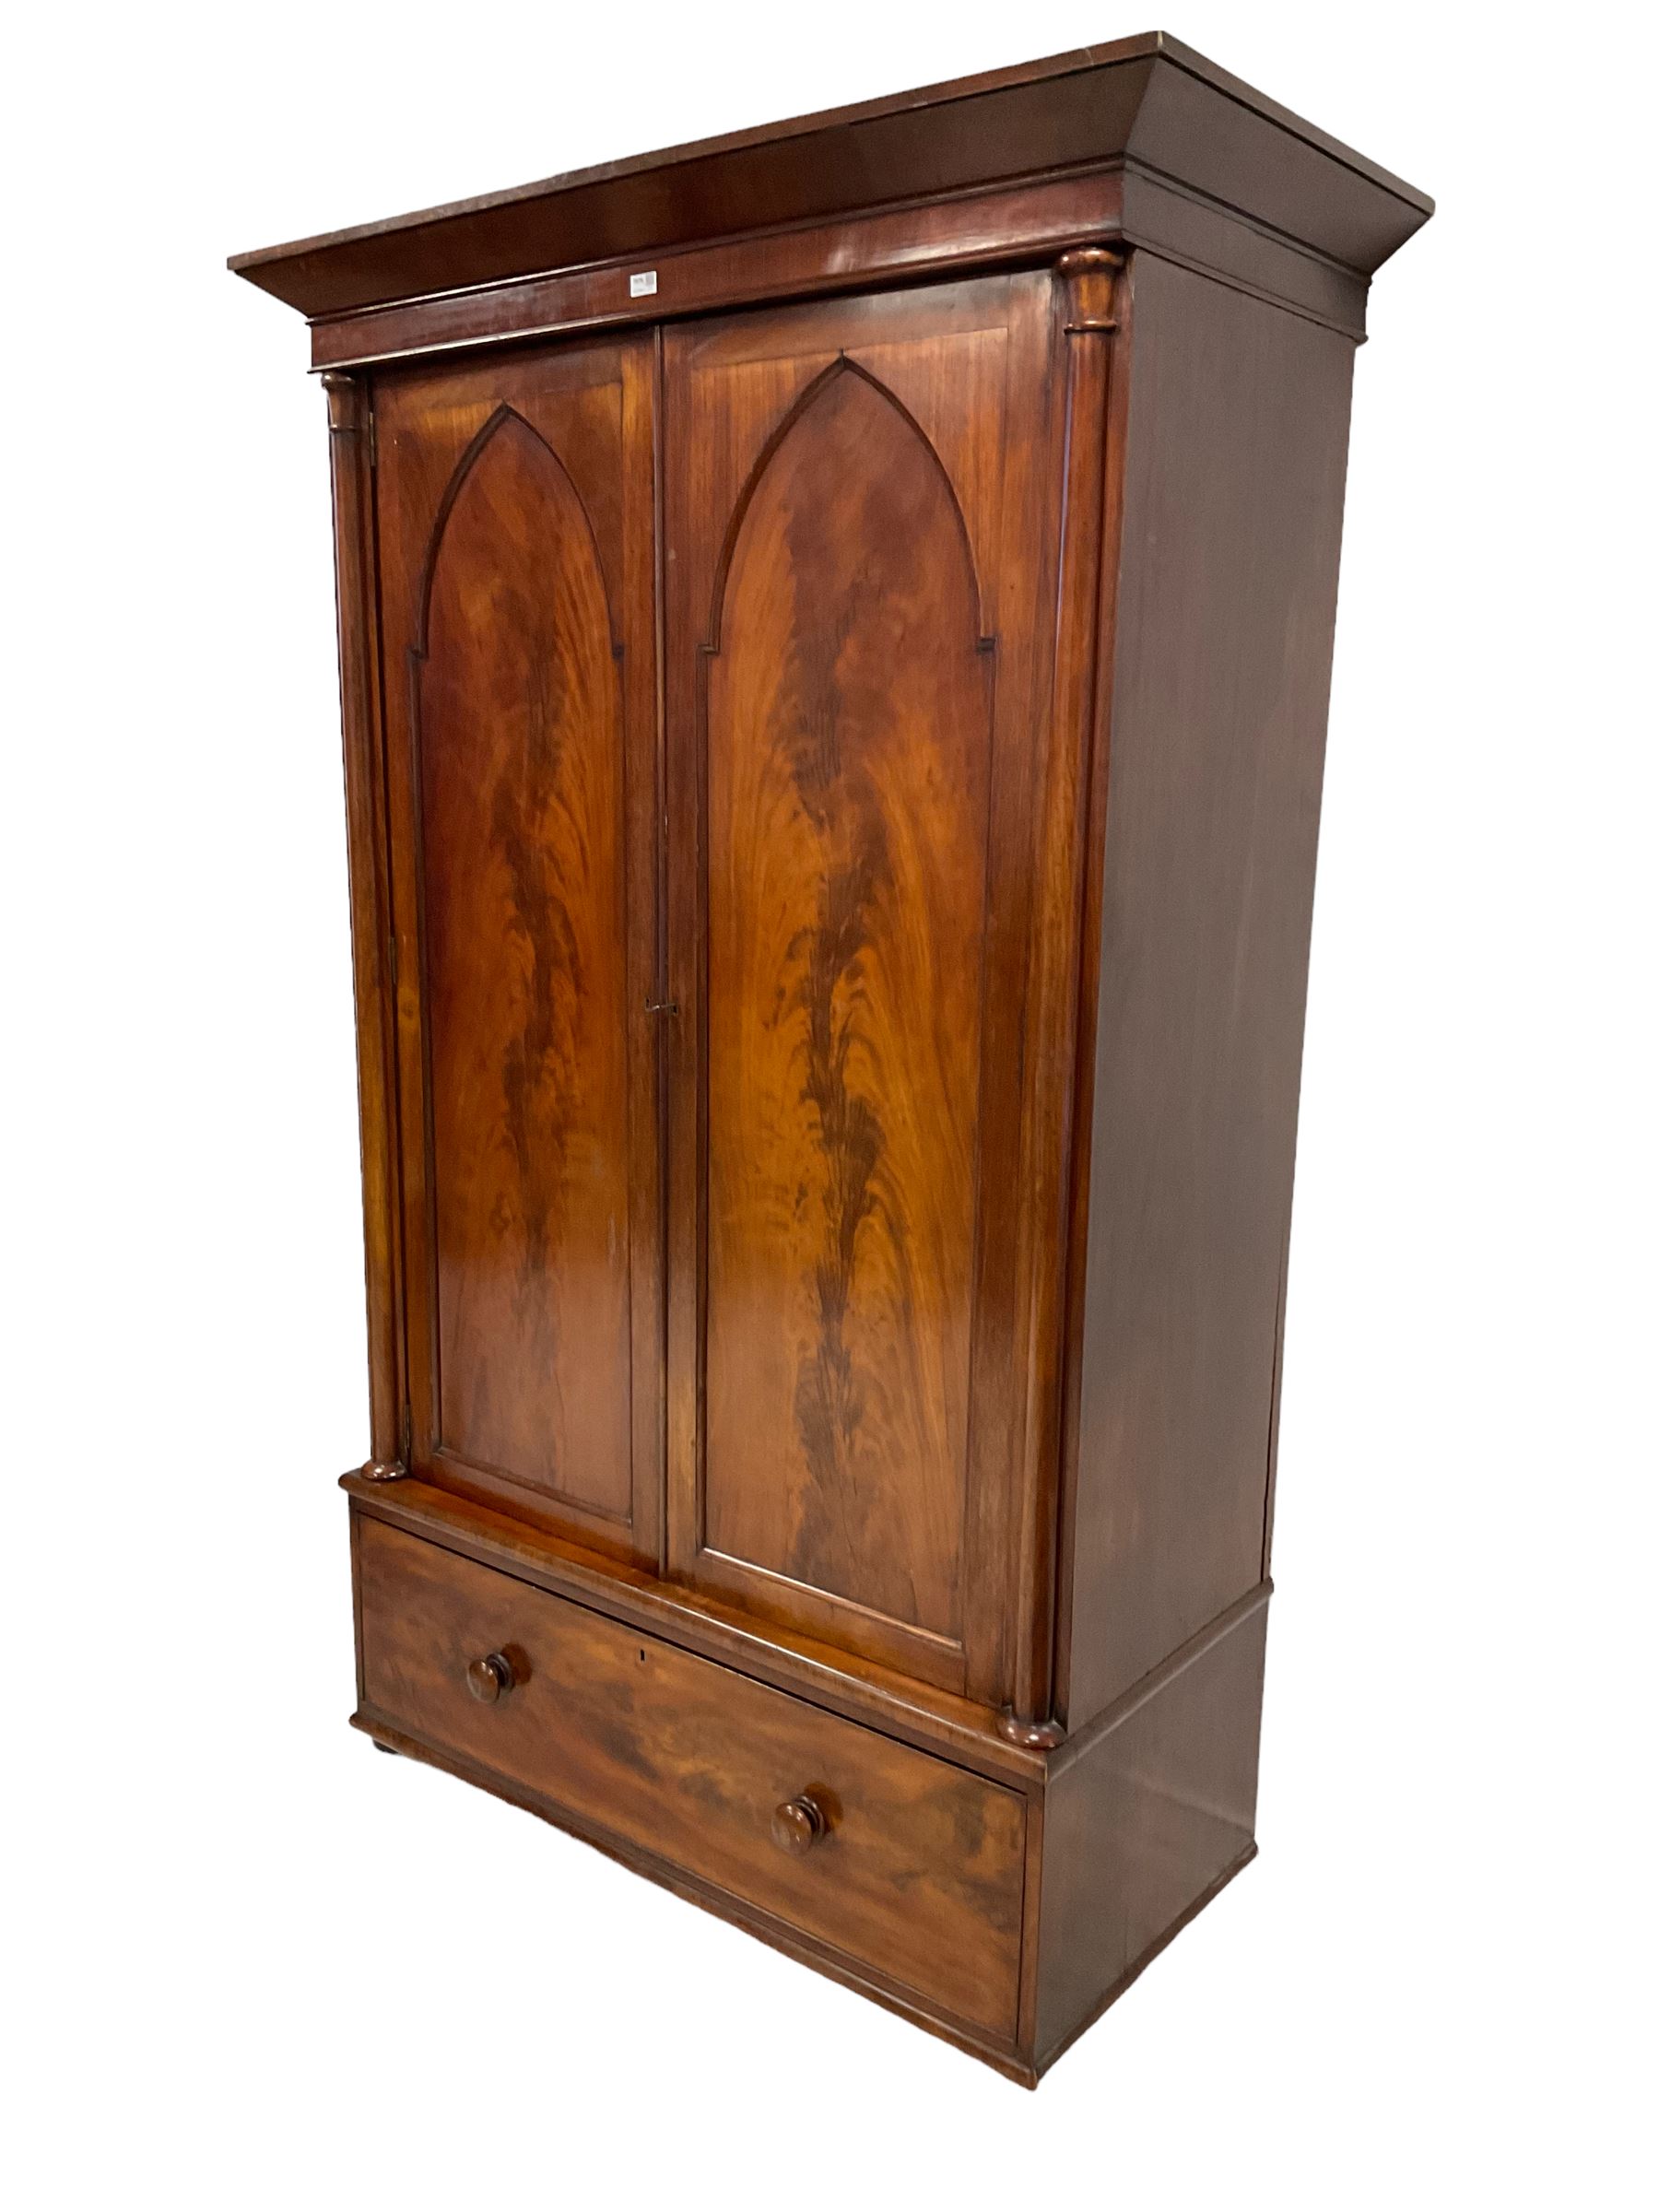 Early 19th century mahogany double wardrobe - Image 3 of 4